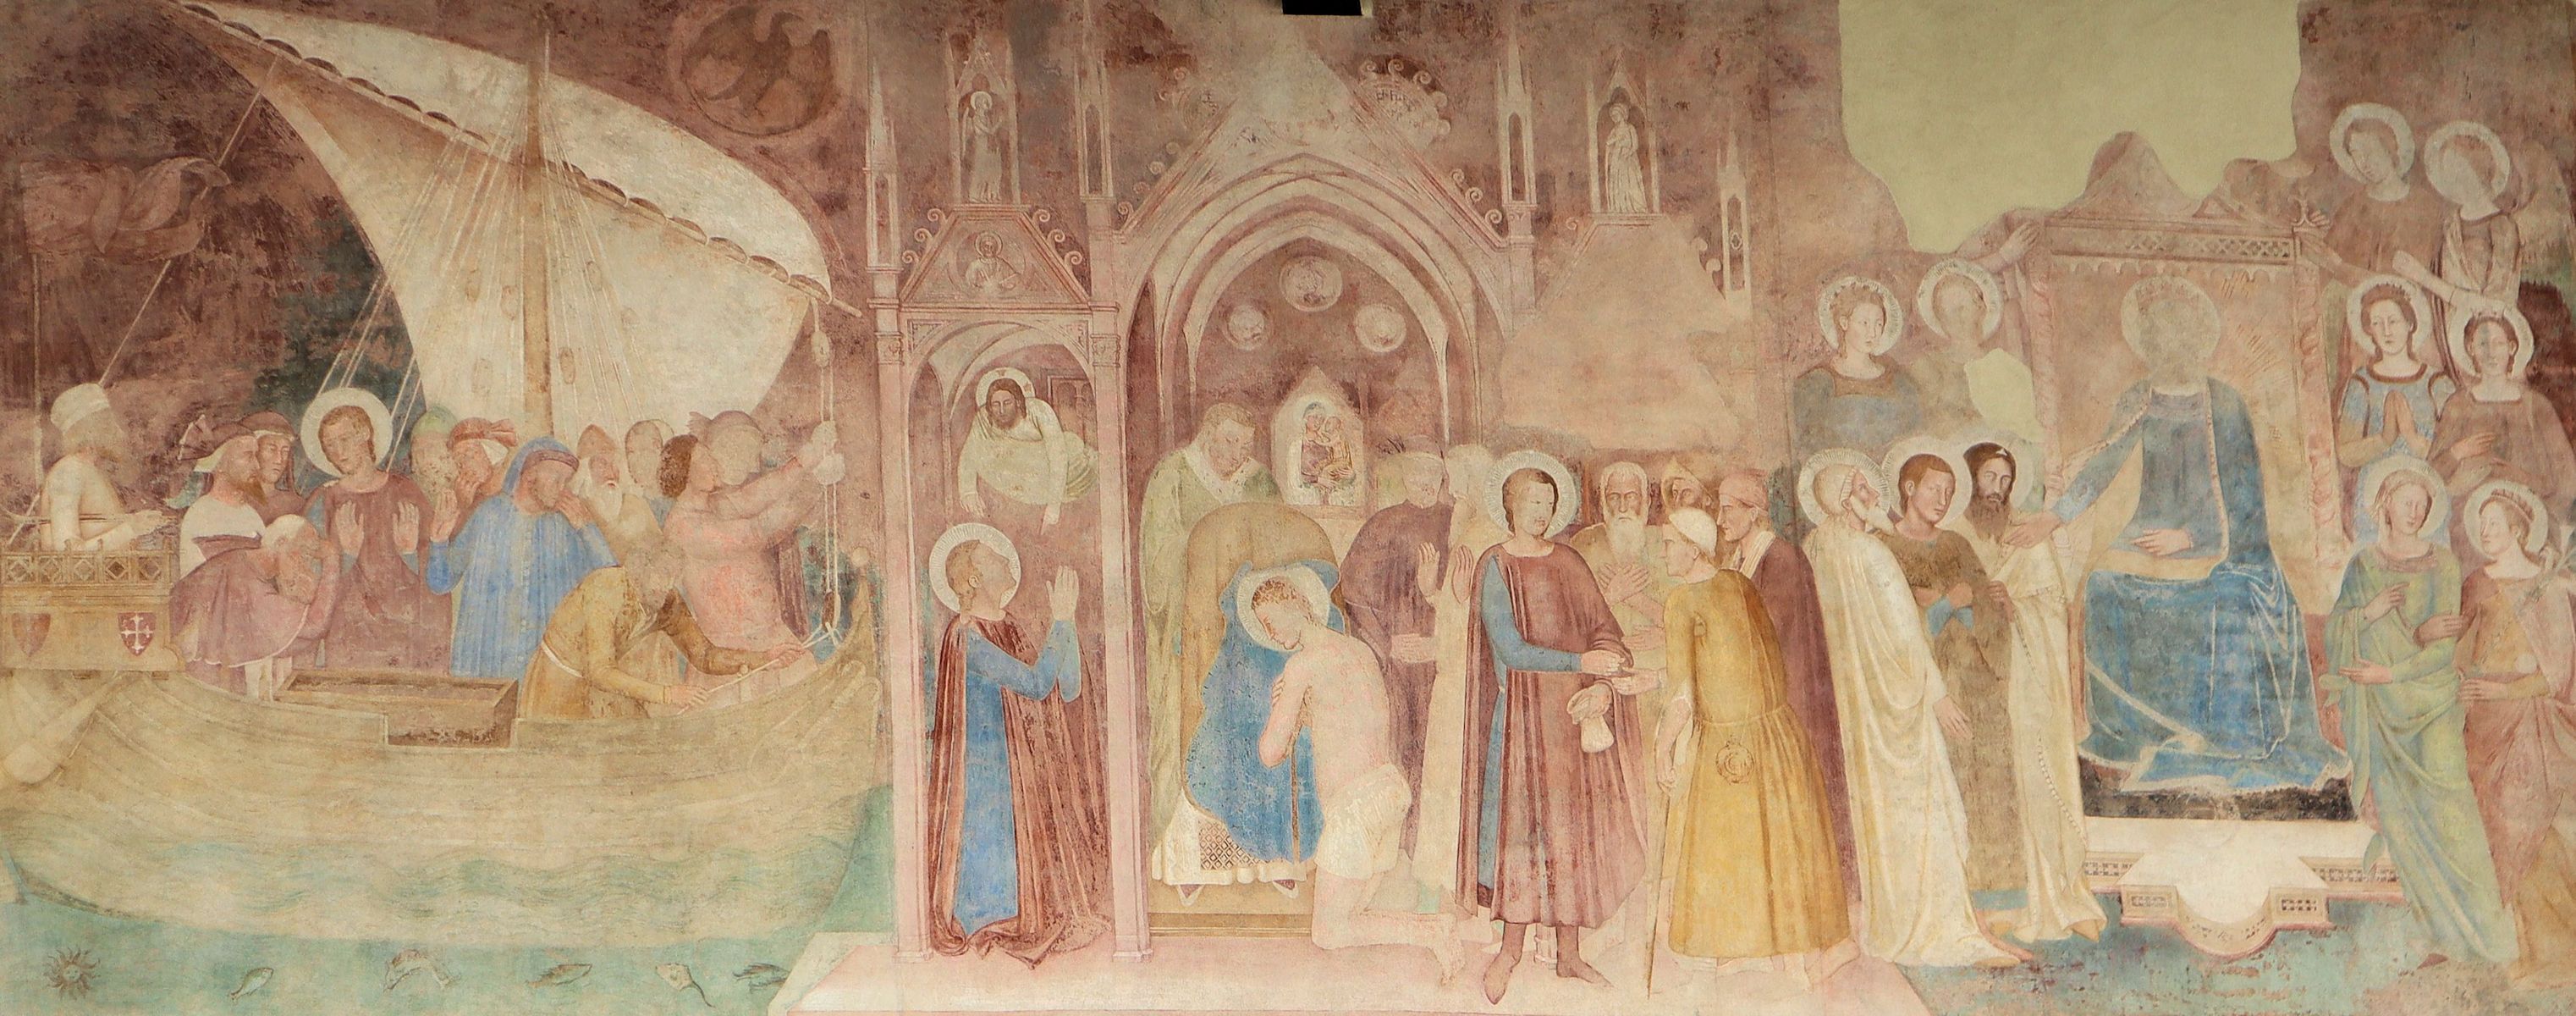 Andrea di Bonaiuto: Rainer fährt ins Heilige Land, bekommt das Pilgergewand, hat eine  Christus-Vision und verehrt Maria, Fresko, 1377, in den Arkaden des Campo Santo in Pisa